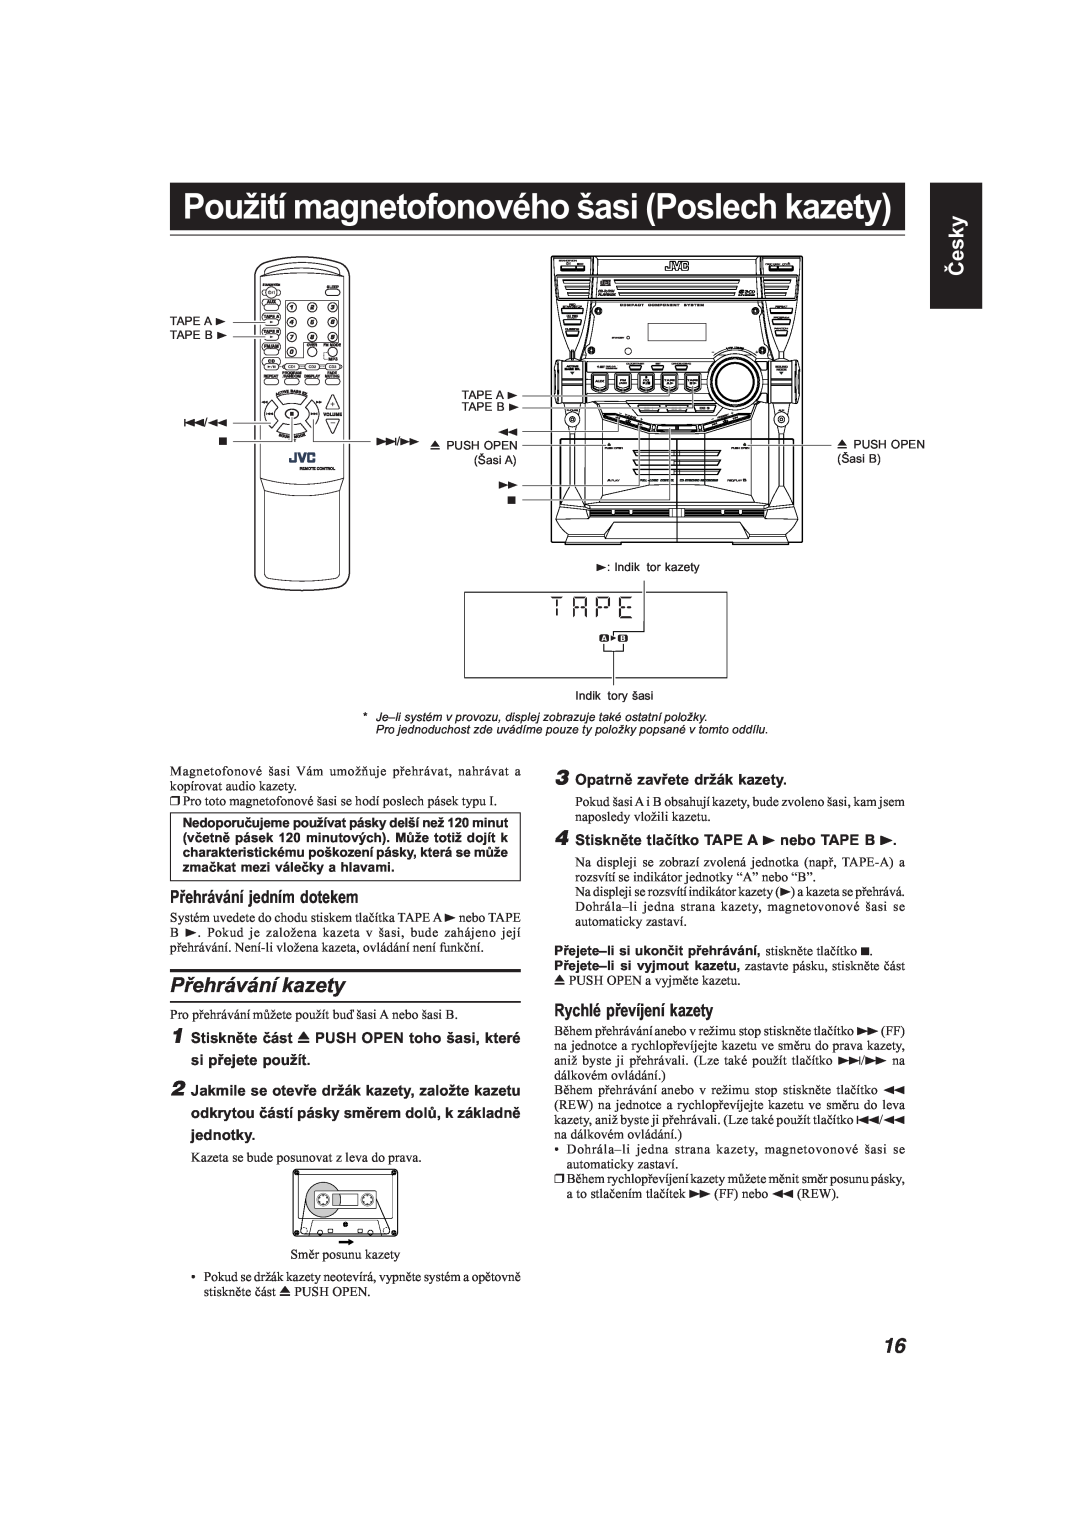 JVC MX-KB22 Přehrávání kazety, Přehrávání jedním dotekem, Rychlé převíjení kazety, Česky, Opatrně zavřete držák kazety 